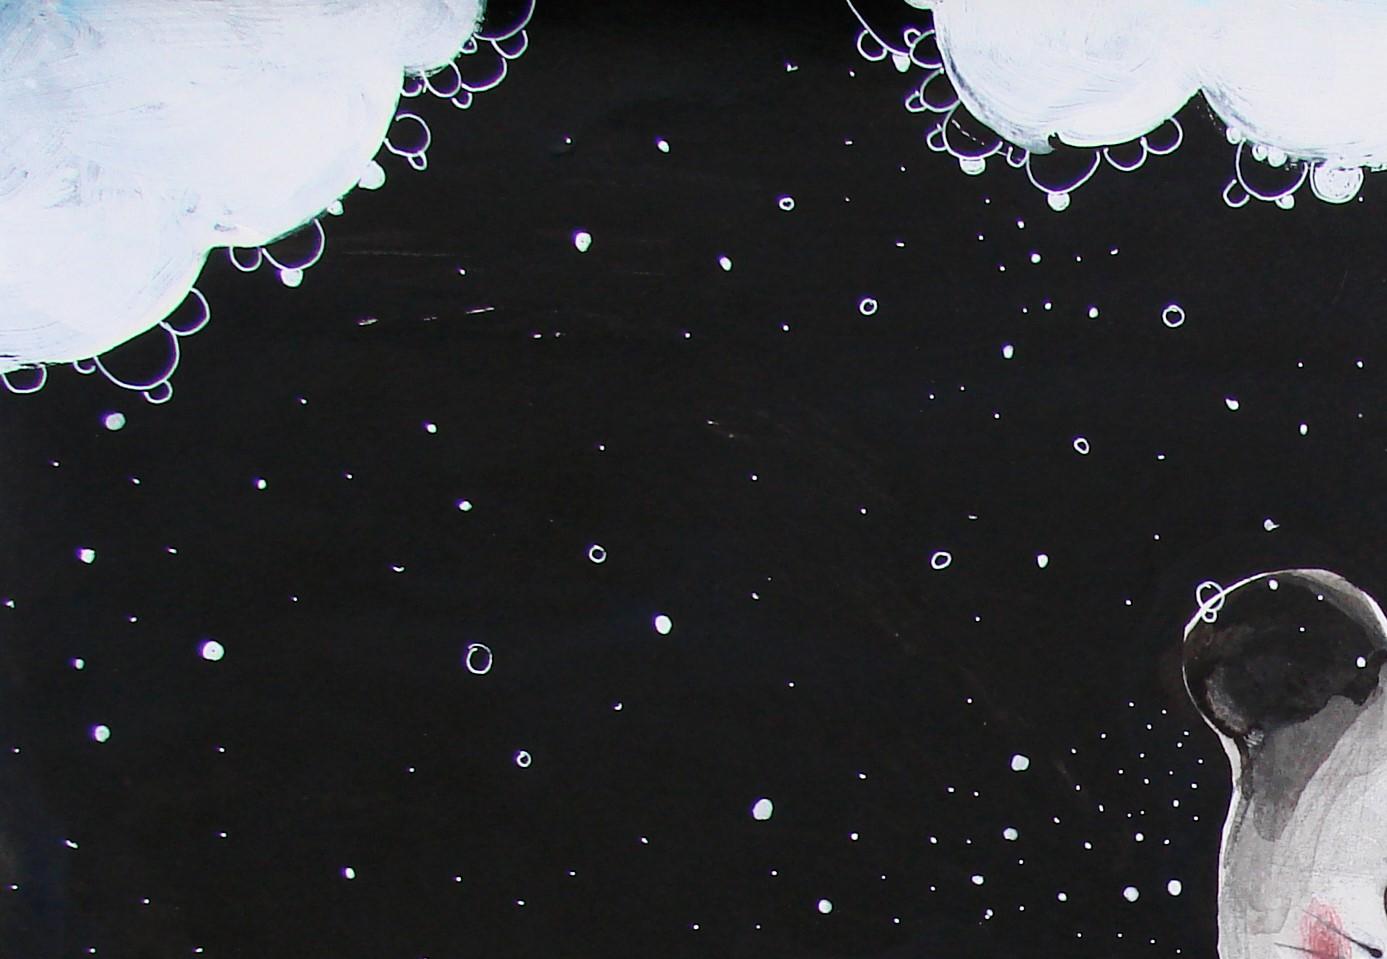 Seifenwolken, 2014
Acryl, Fineliner und Farbstift auf Papier
13.97 H x 19.68 W in
35.5 H  x 50 W cm

Raluca Arnăutu erschafft eine zoomorphe Welt, in der Tiere aus verschiedenen Welten gemischt, in ihrer Größe verändert, rekonstituiert oder neu